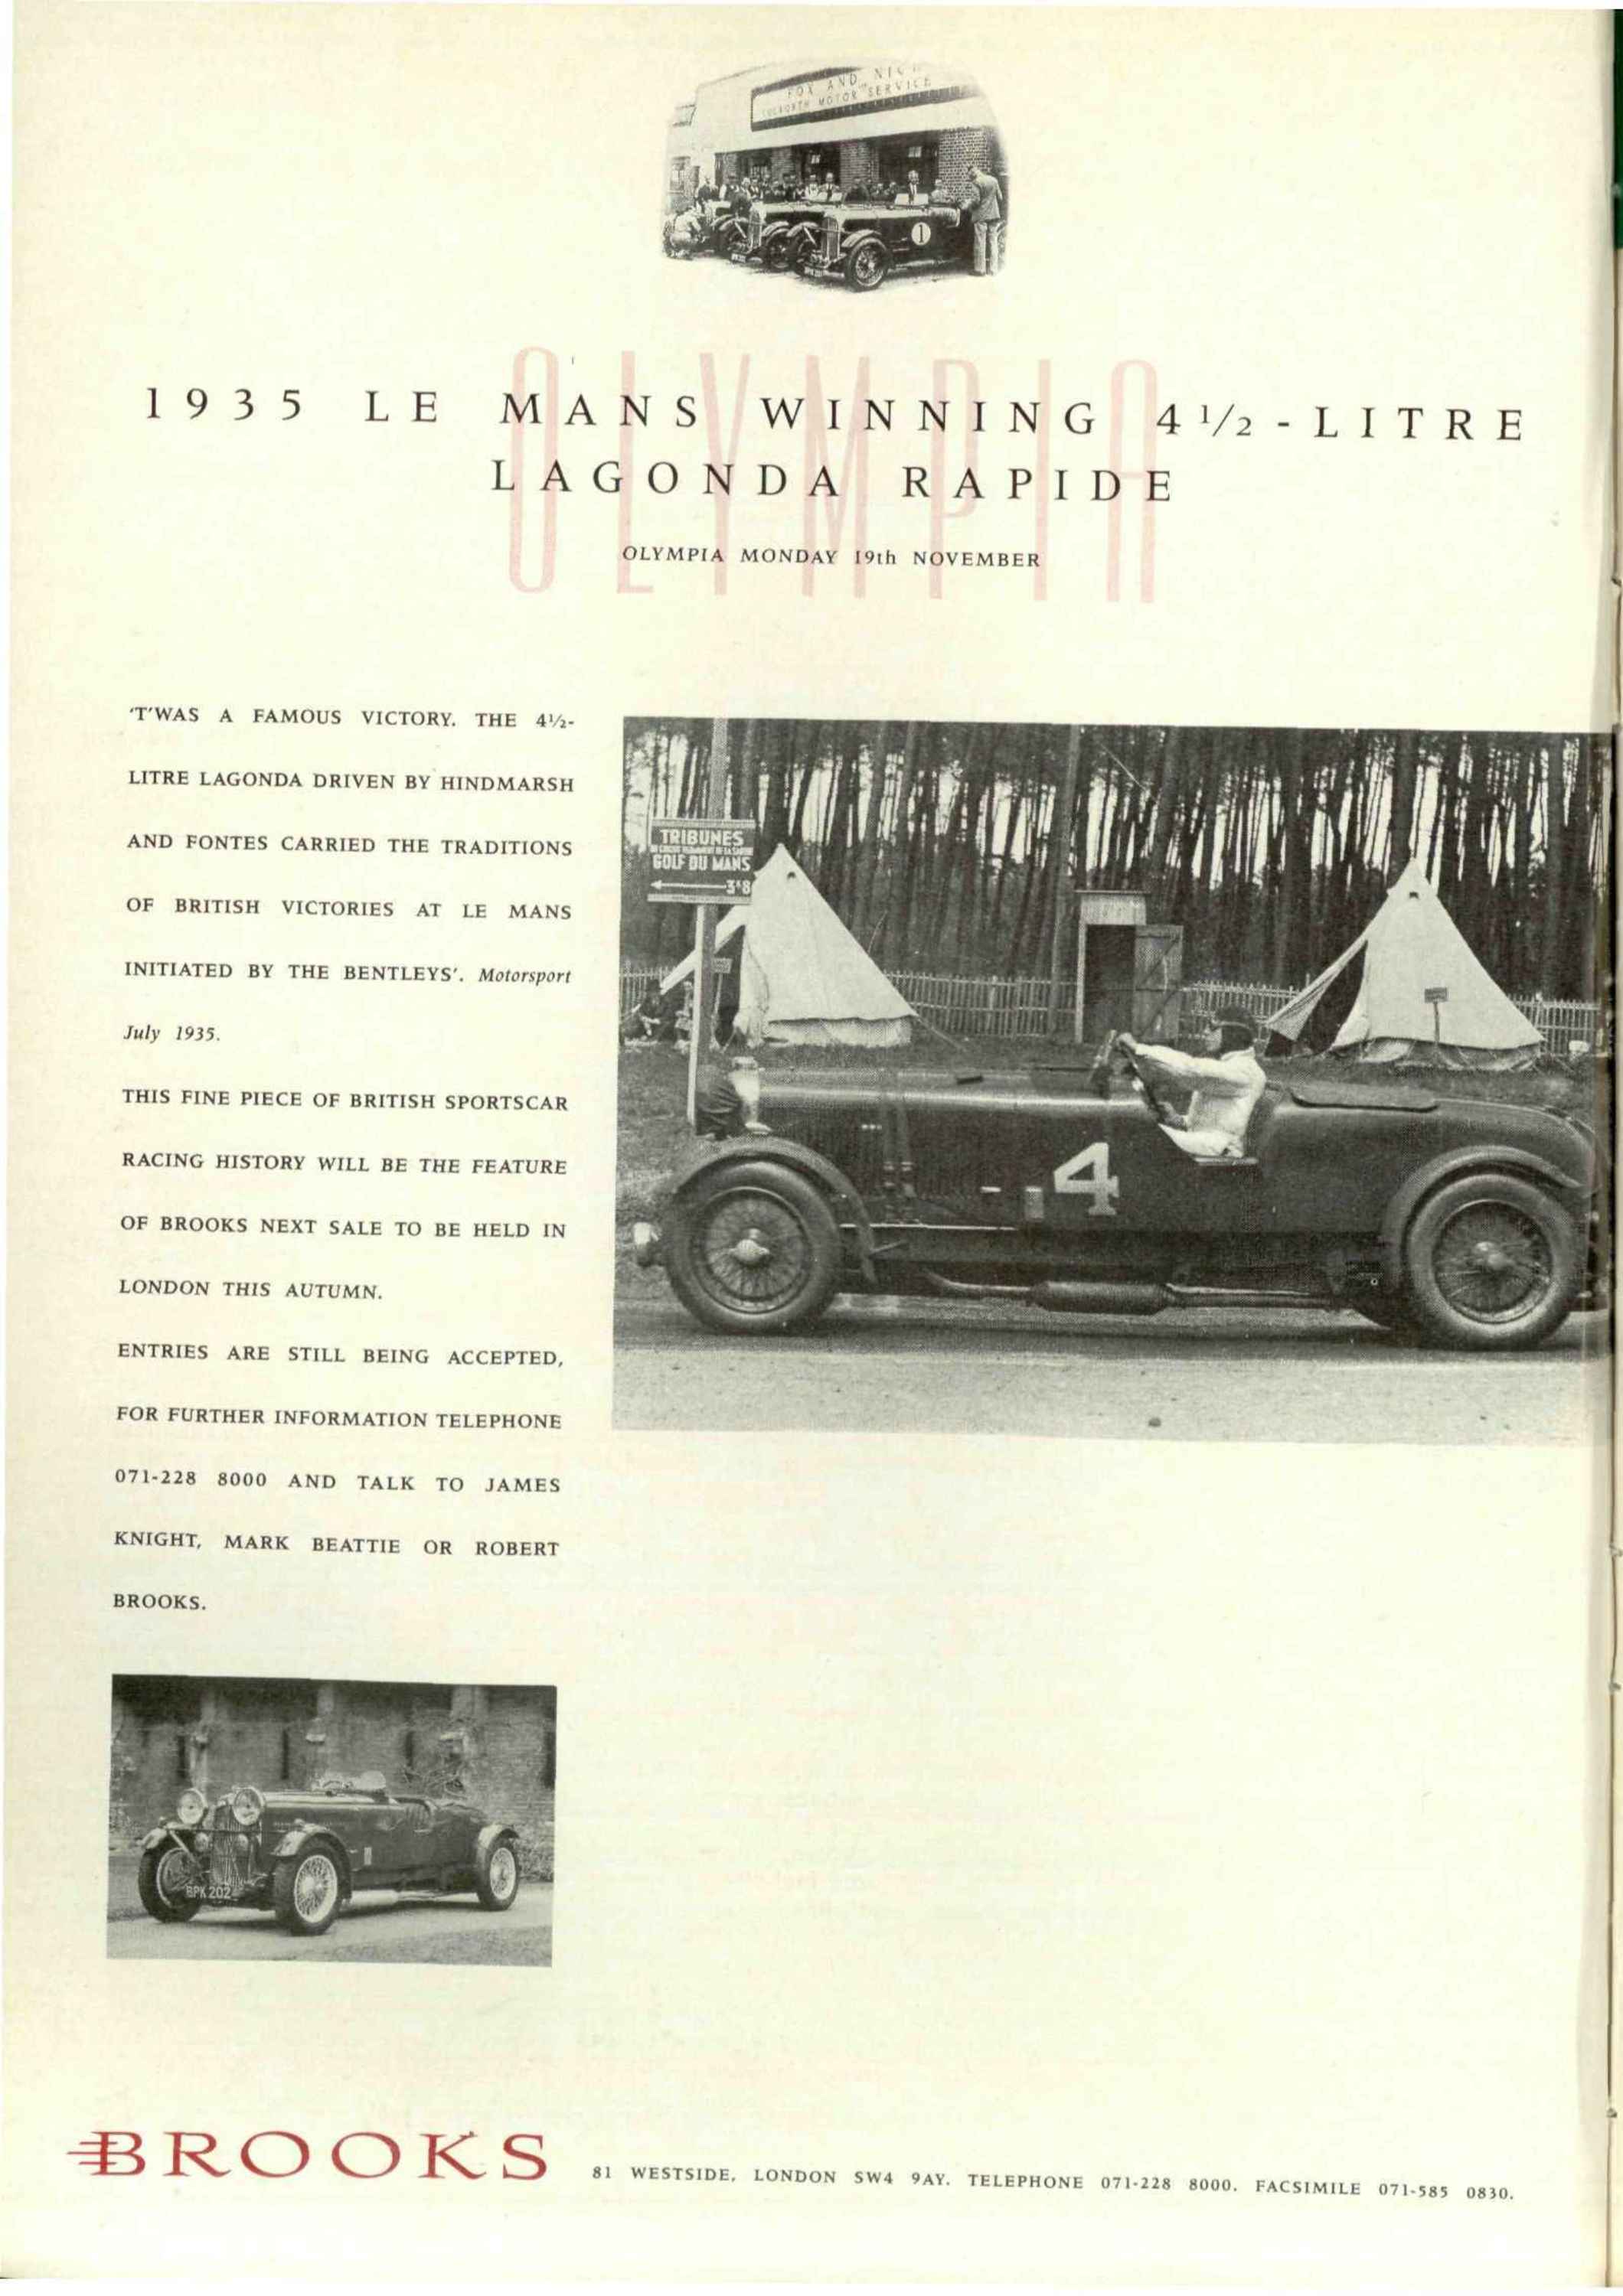 Louis Vuitton's Iconic Monaco Grand Prix Trophy Case — The Outlet